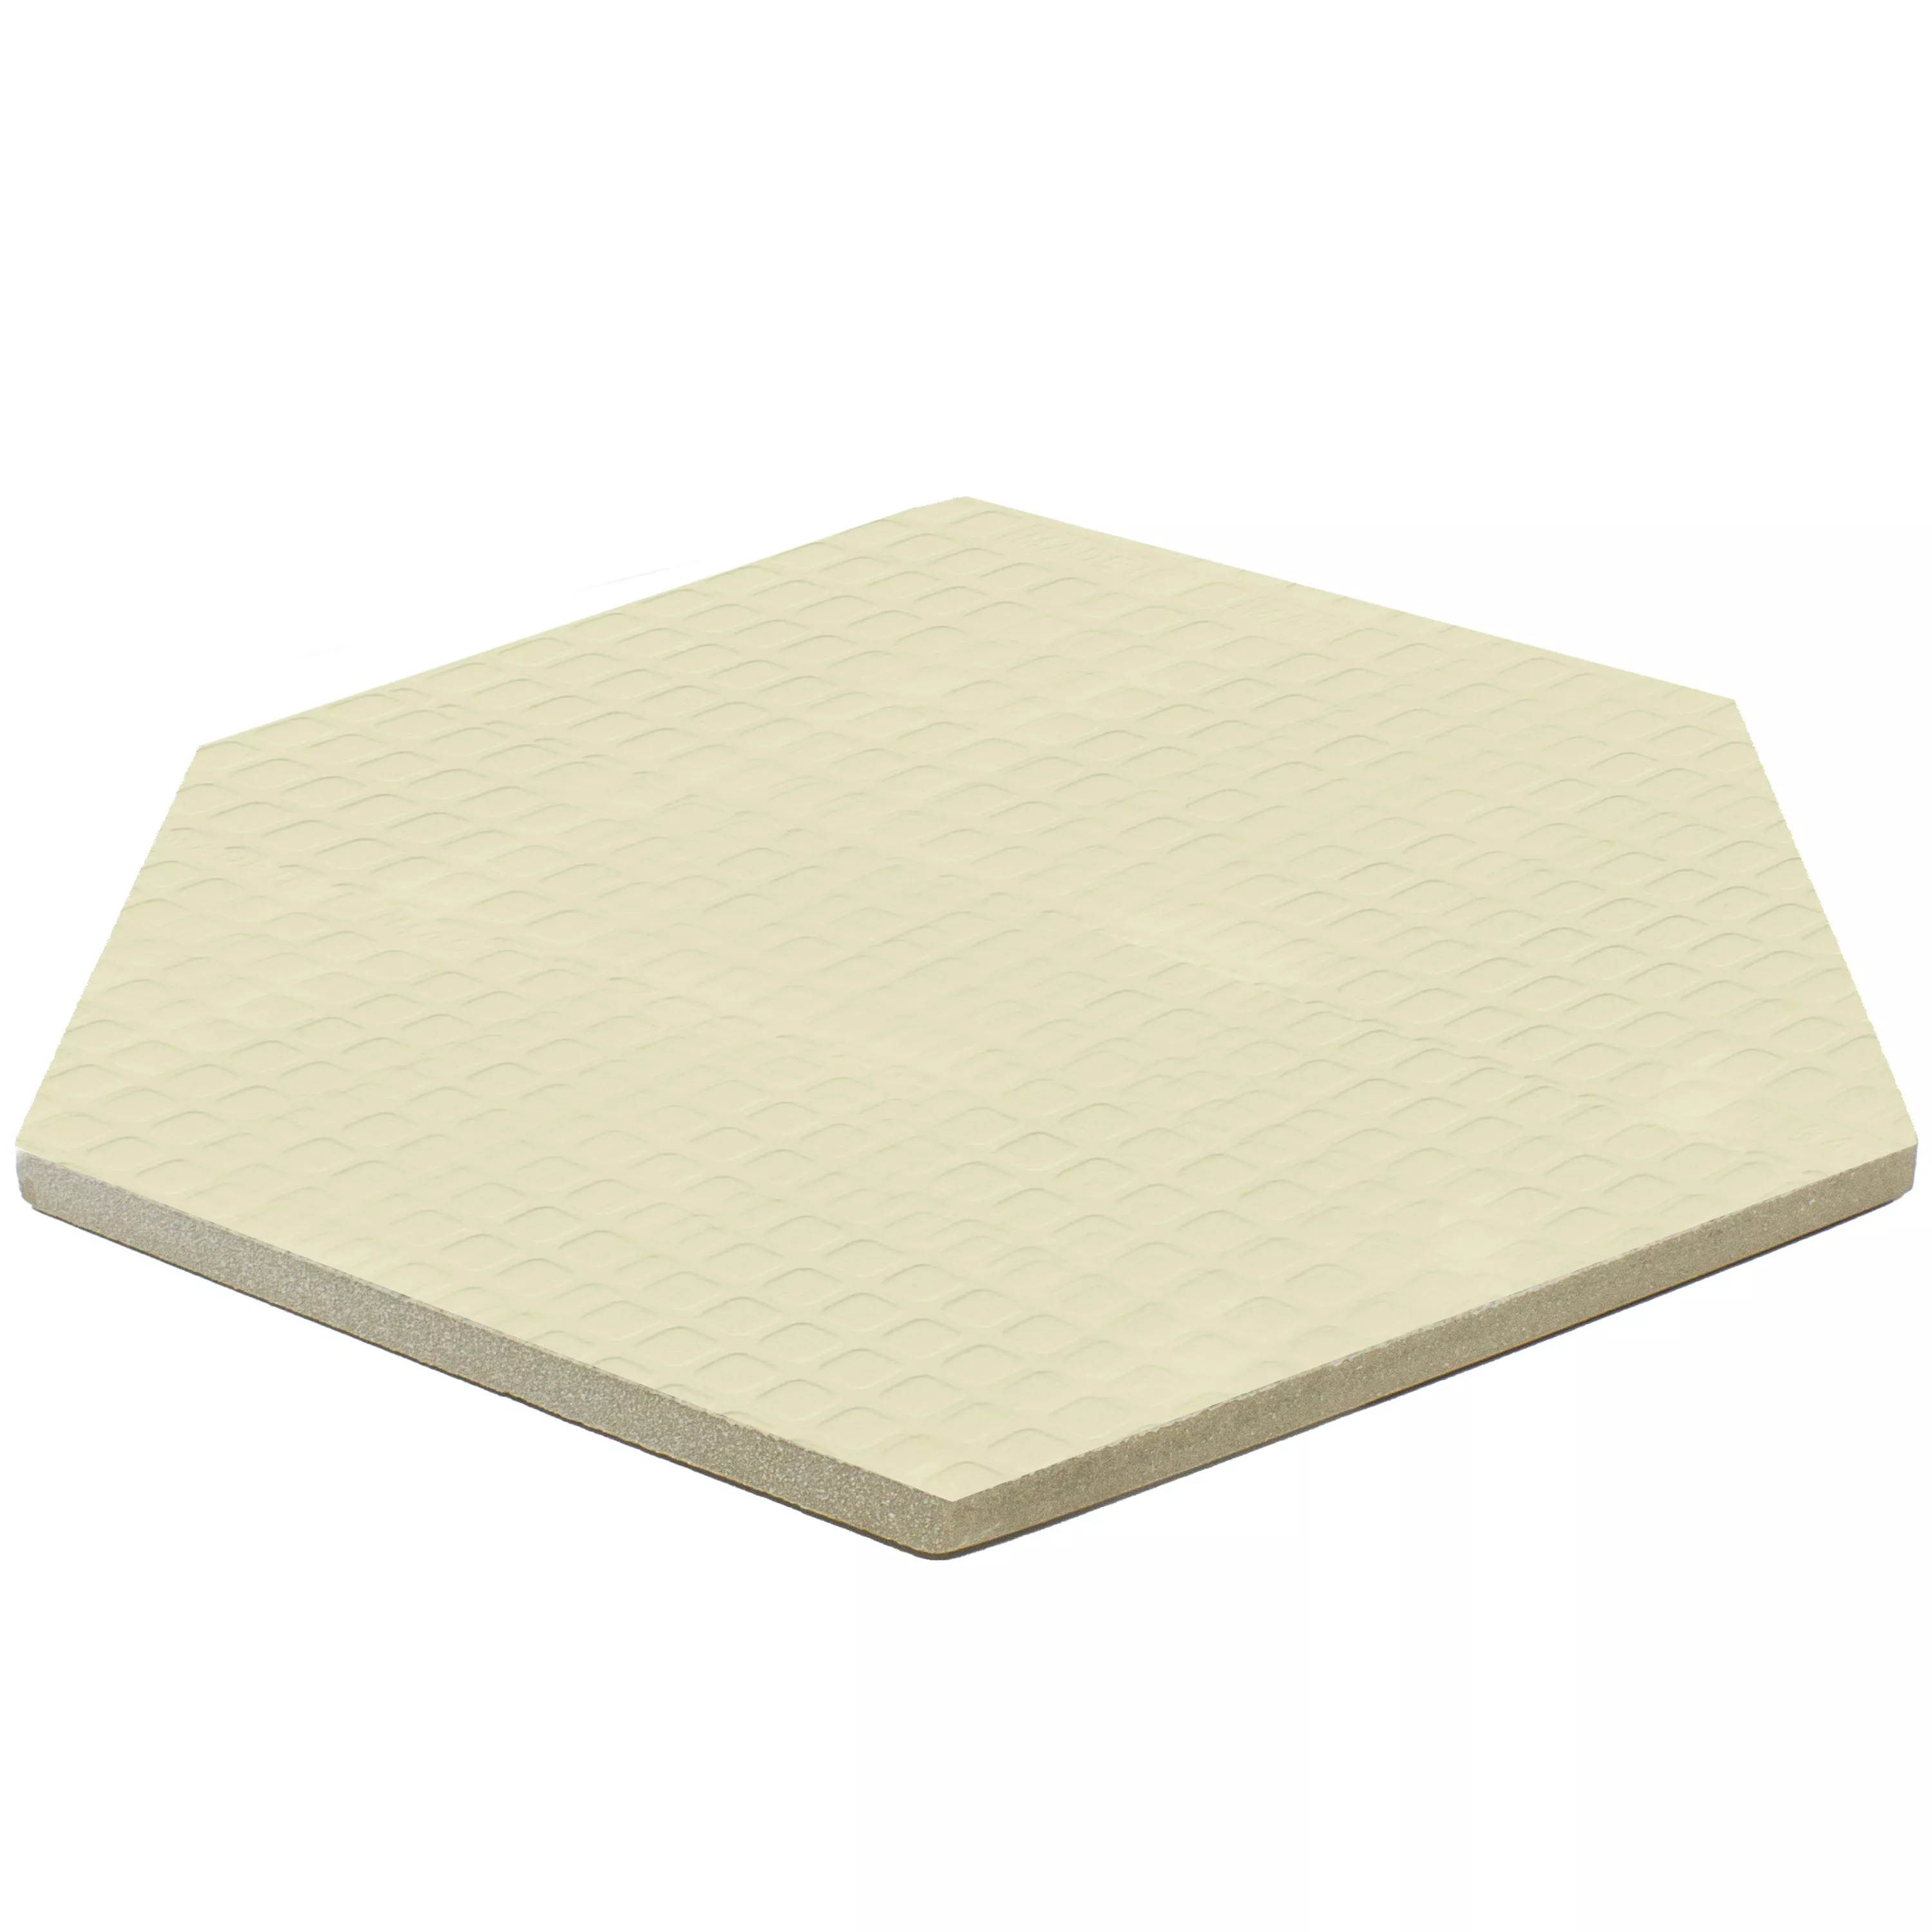 Vzorek Podlahové Dlaždice Arosa Matný Šestiúhelník Bílá 17,3x15cm